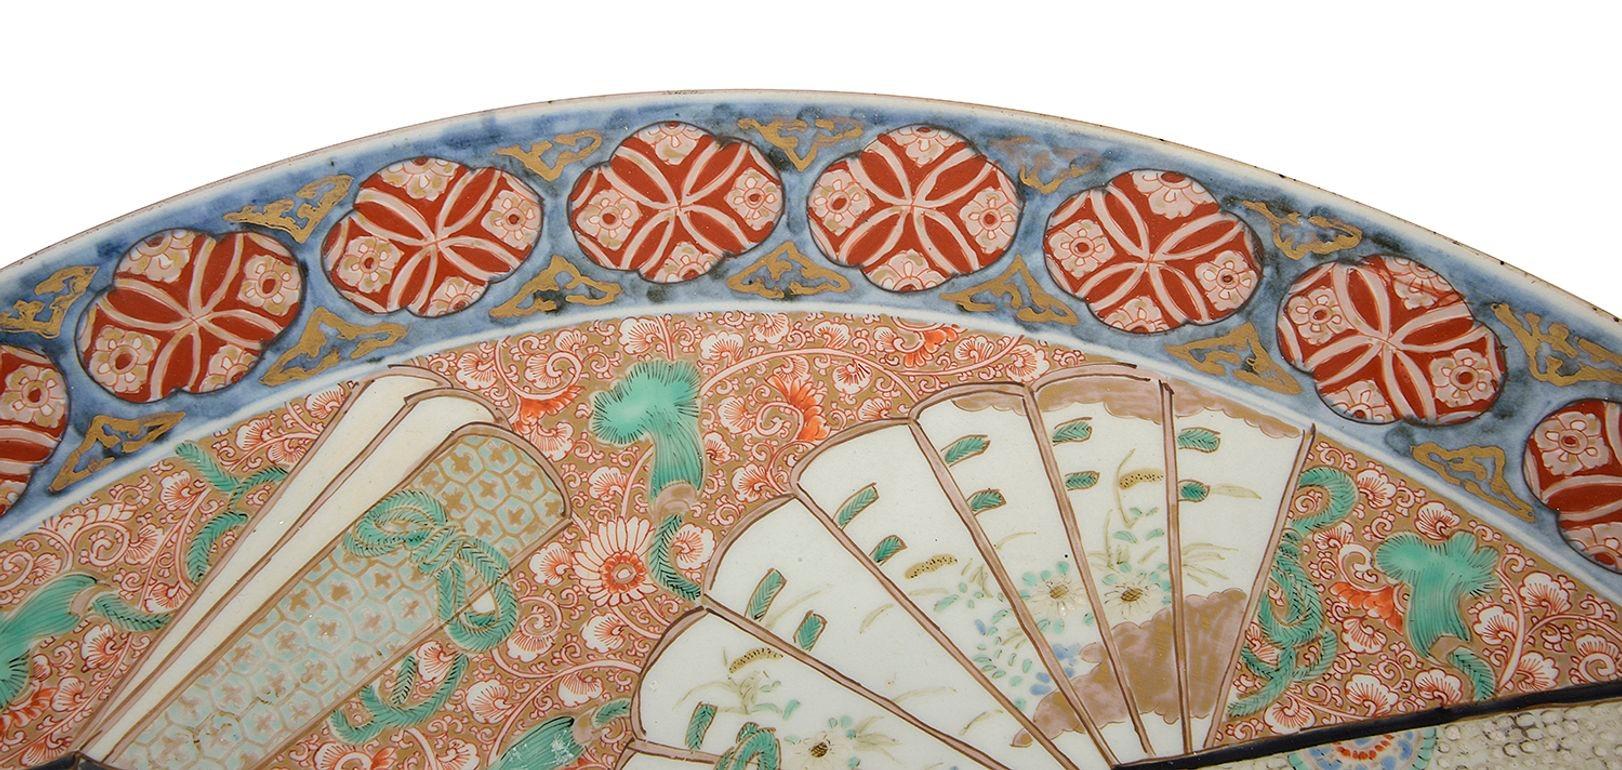 Très bonne qualité de porcelaine japonaise Imari de la fin du XIXe siècle, peinte à la main, représentant un écran à six plis avec un homme à cheval dans un cadre rural montagneux. Éventails, décorations florales et motifs sur les bordures.
Lot 76